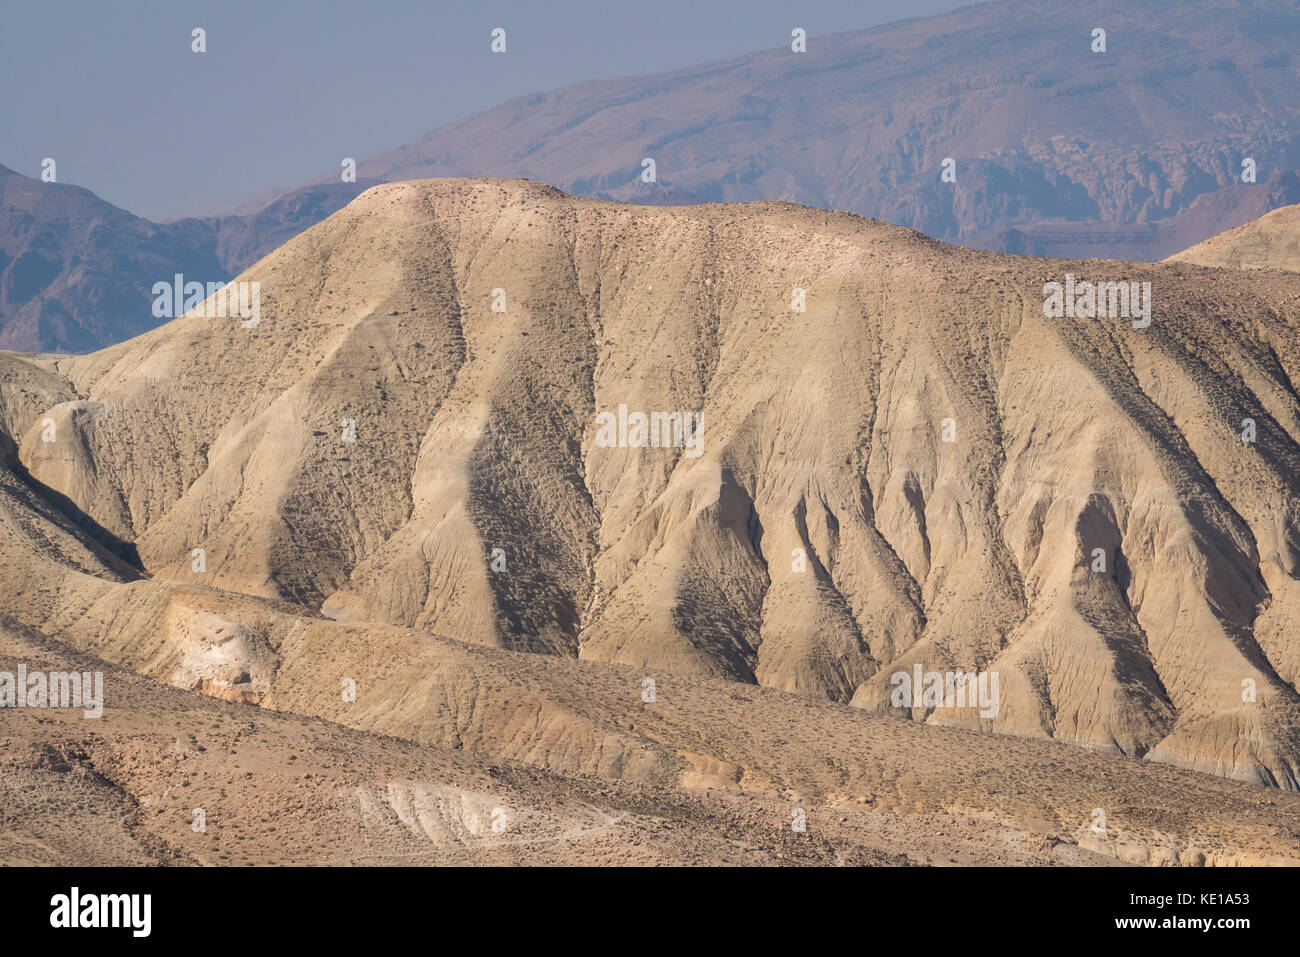 Vista panoramica della valle del deserto con formazioni rocciose scolpite, King's Highway, Jordan, Middle East Foto Stock